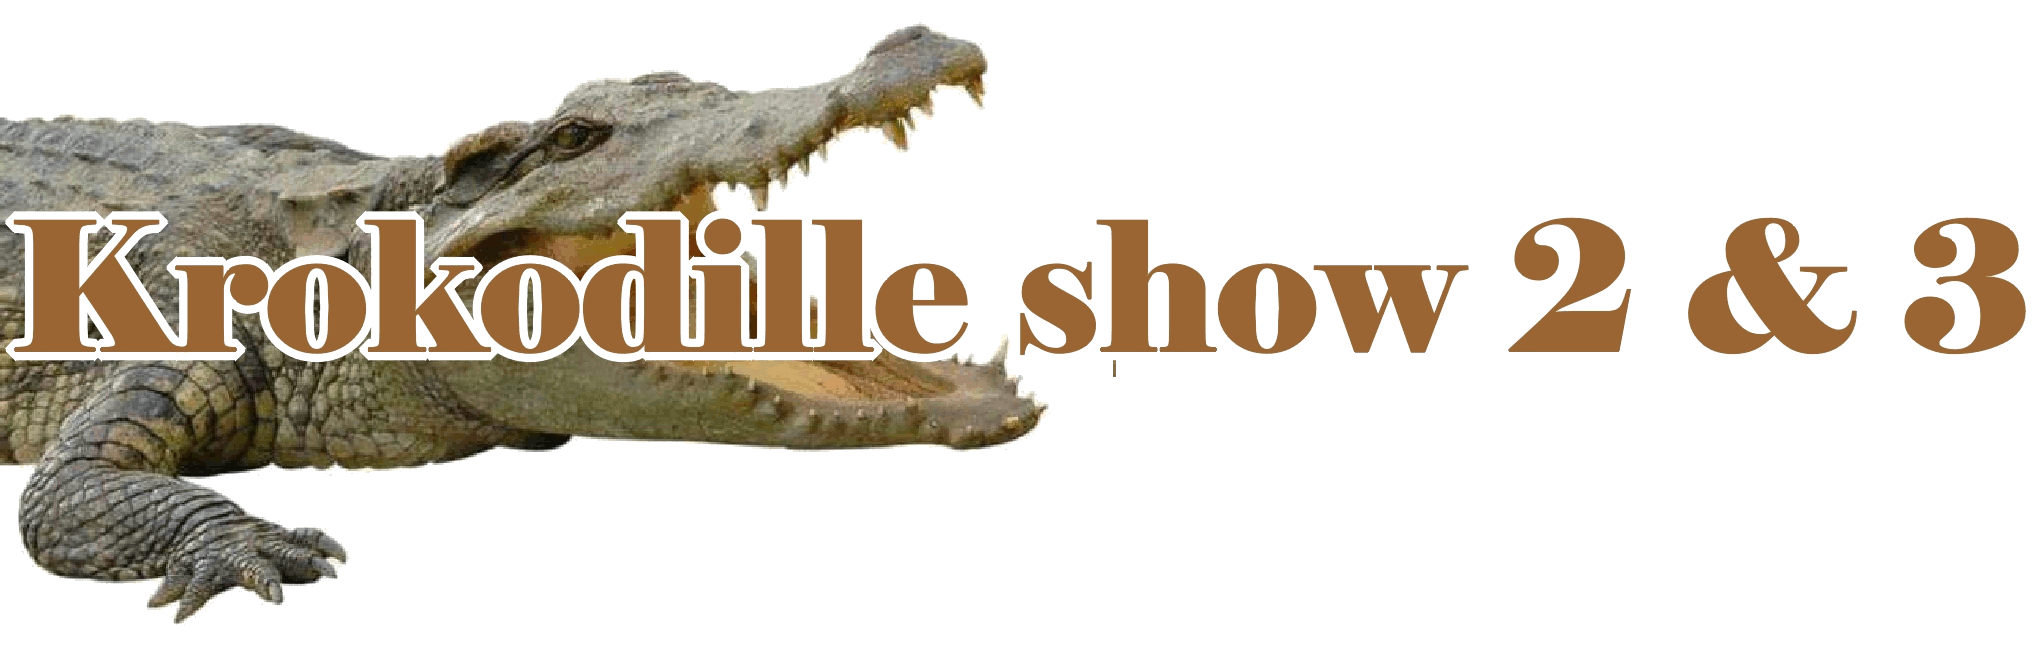 krokodilleshow to og tre